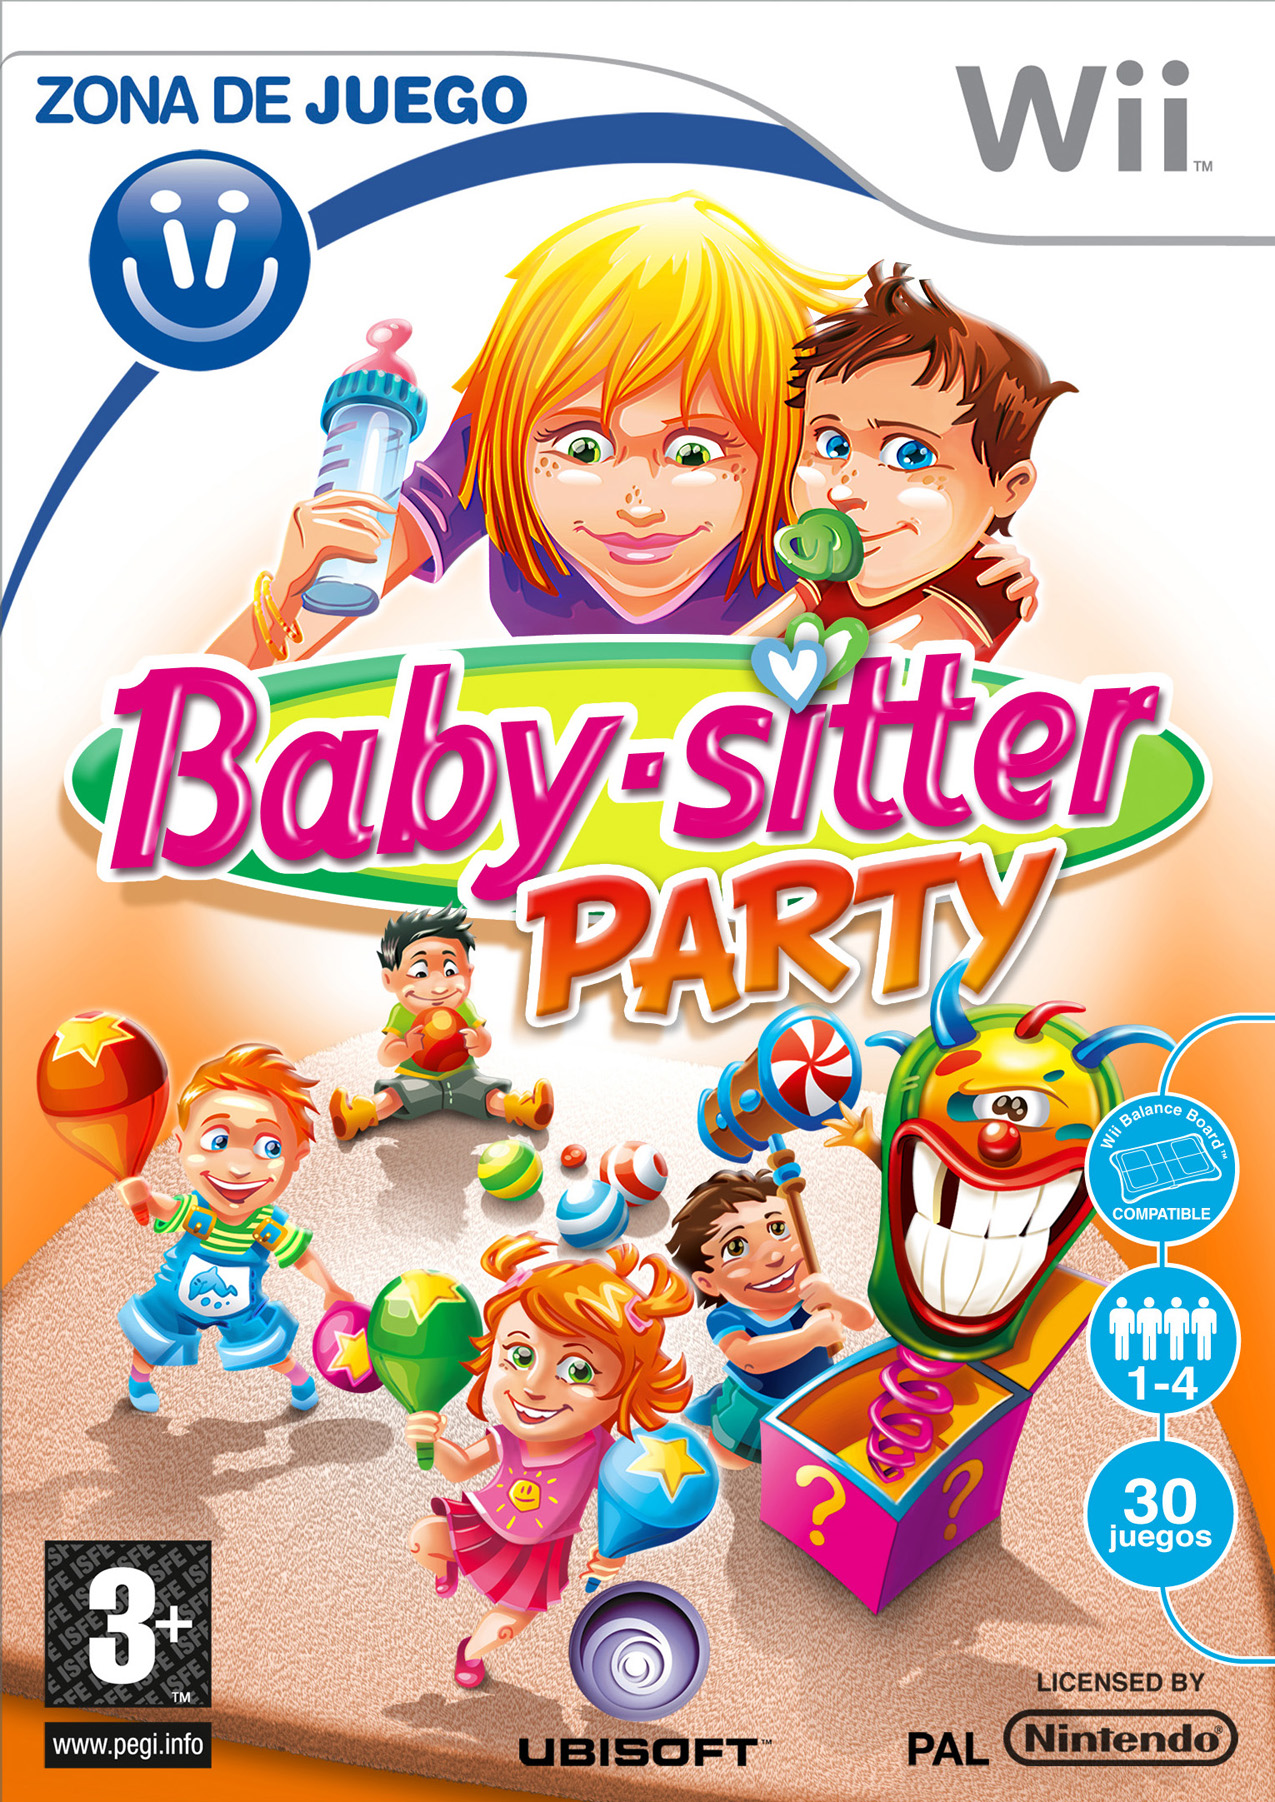 Caratula de Zona de Juego: Baby-Sitter Party para Wii